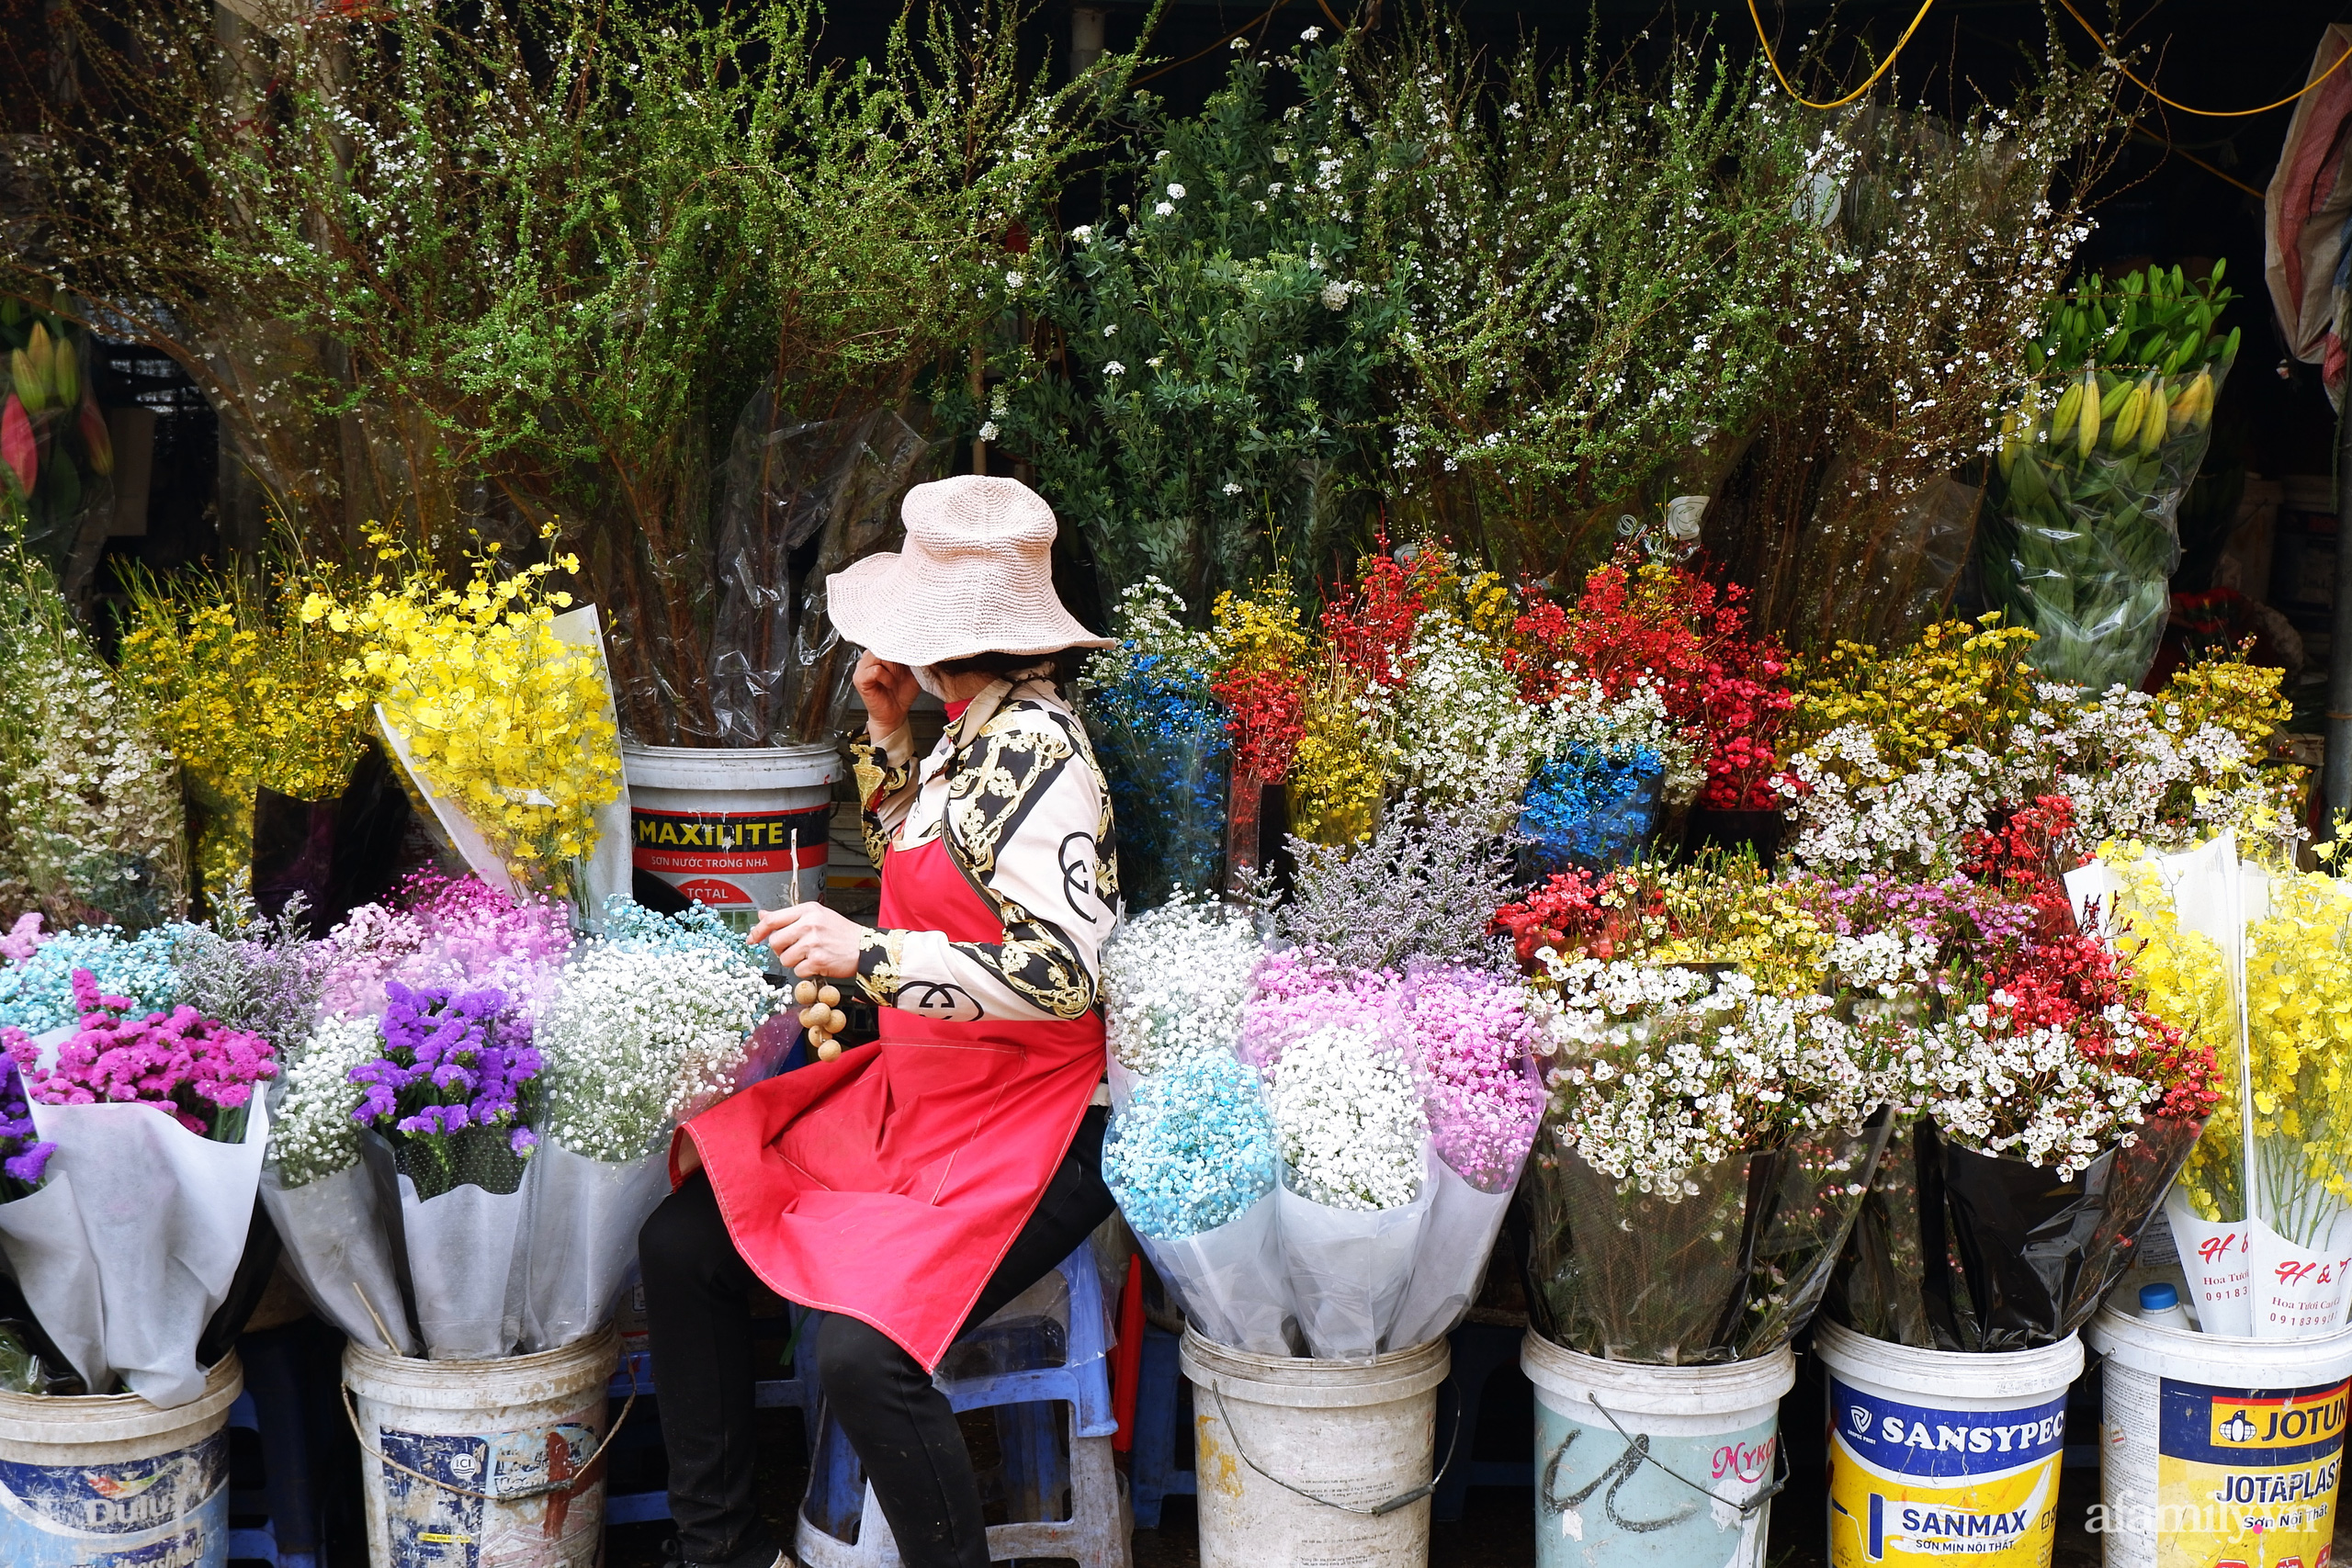 Chợ hoa lớn nhất Hà Nội nhộn nhịp, giá hoa tăng nhẹ trước thềm Tết Nguyên đán 2021  - Ảnh 3.